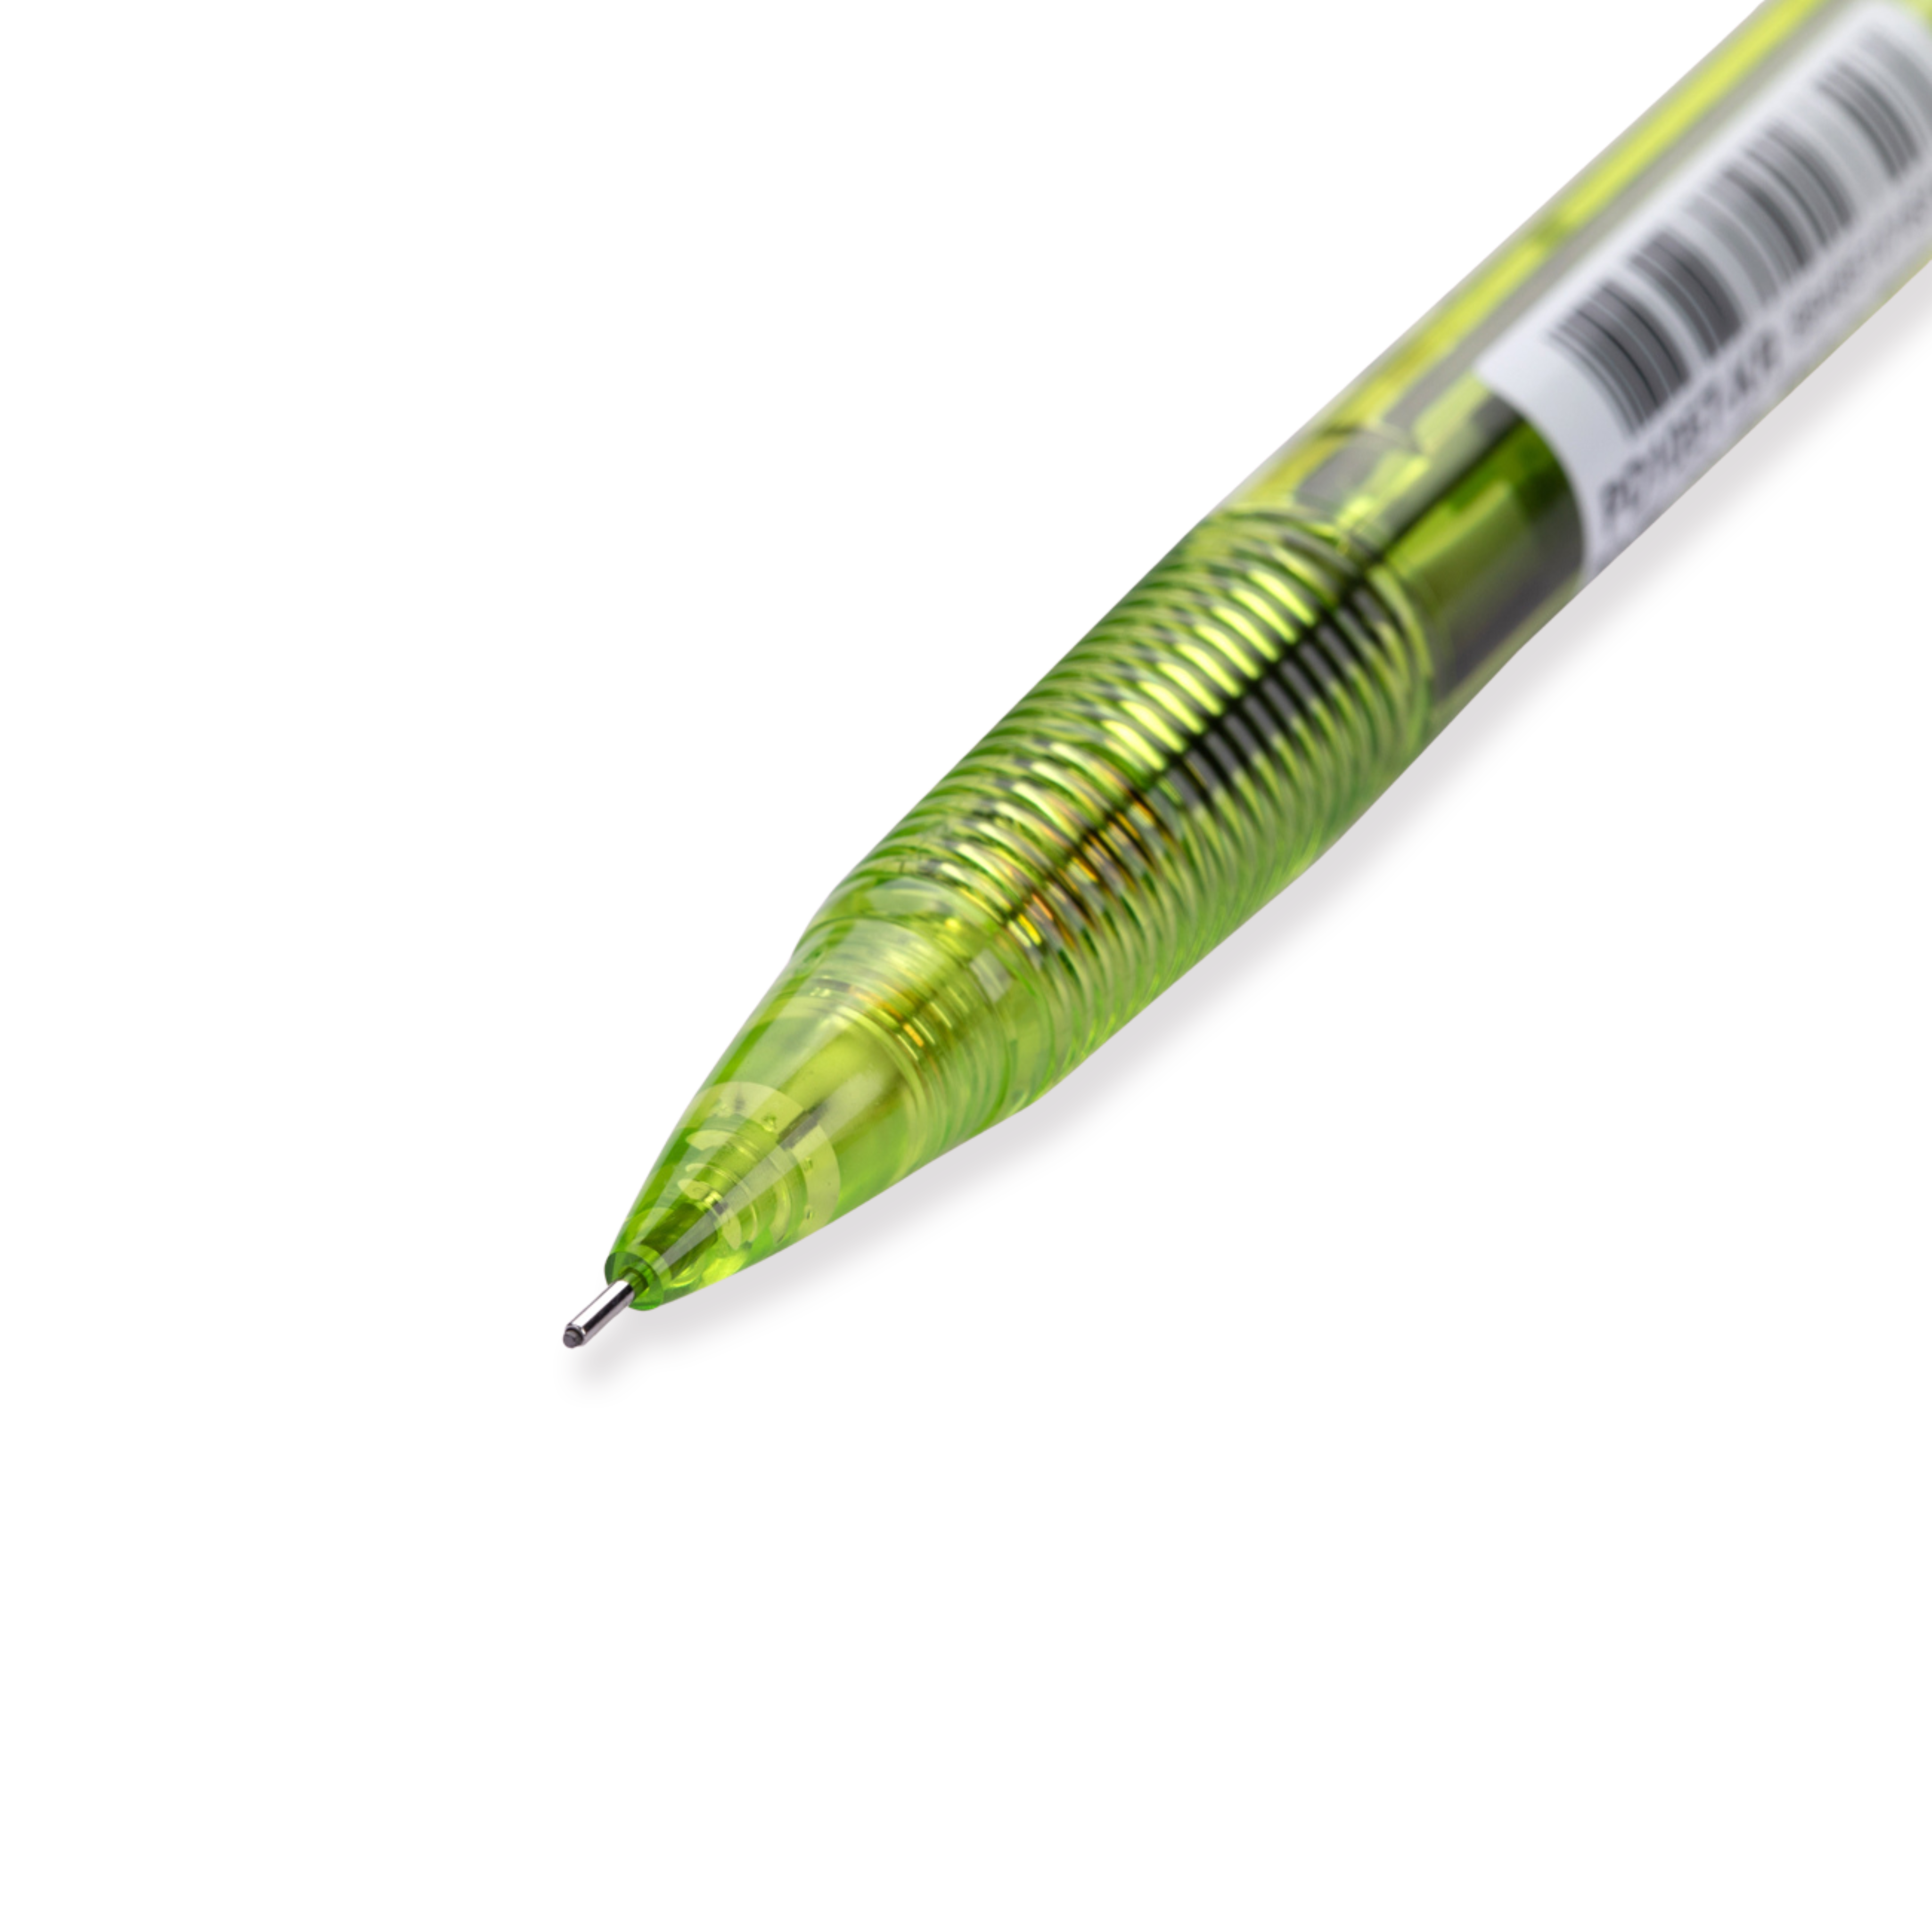 Pentel Techniclick Druckbleistift mit seitlichem Klick, 0,5 mm, Grün